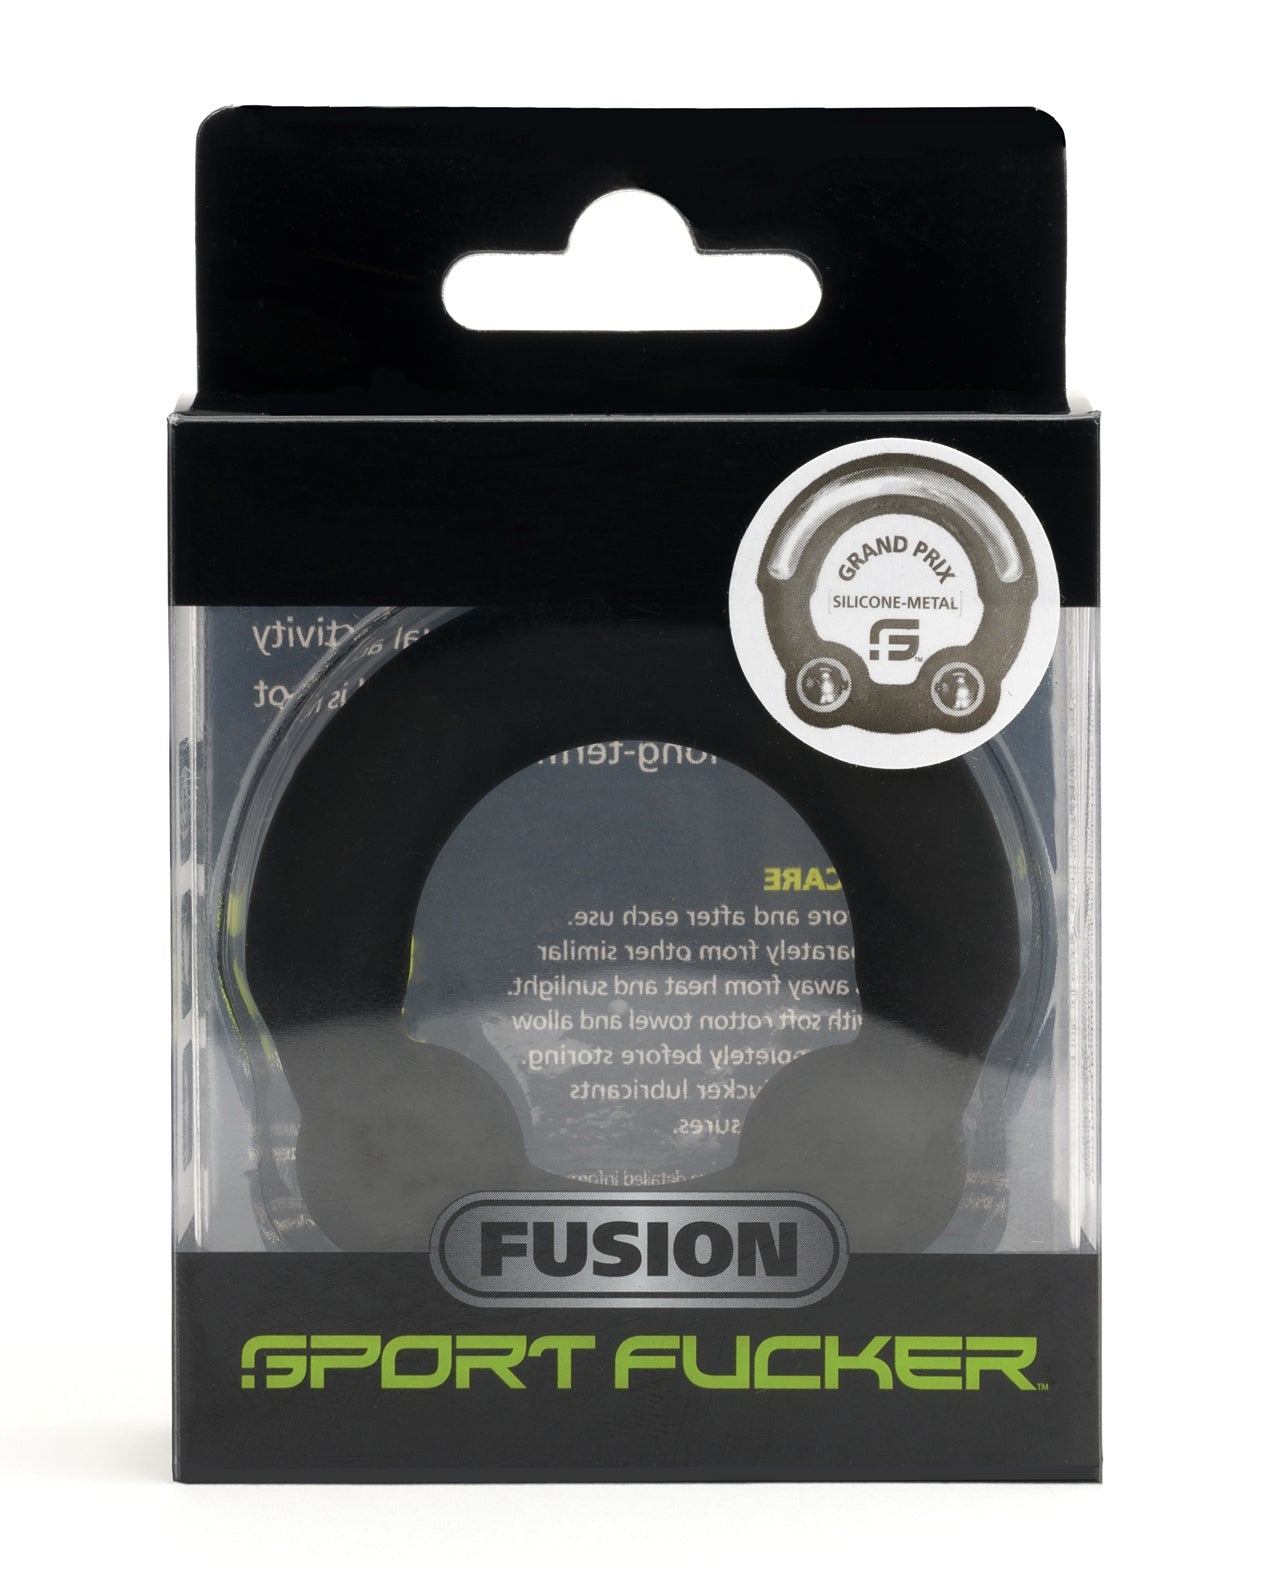 Sport Fucker Grand Prix Fusion Ring - Regular